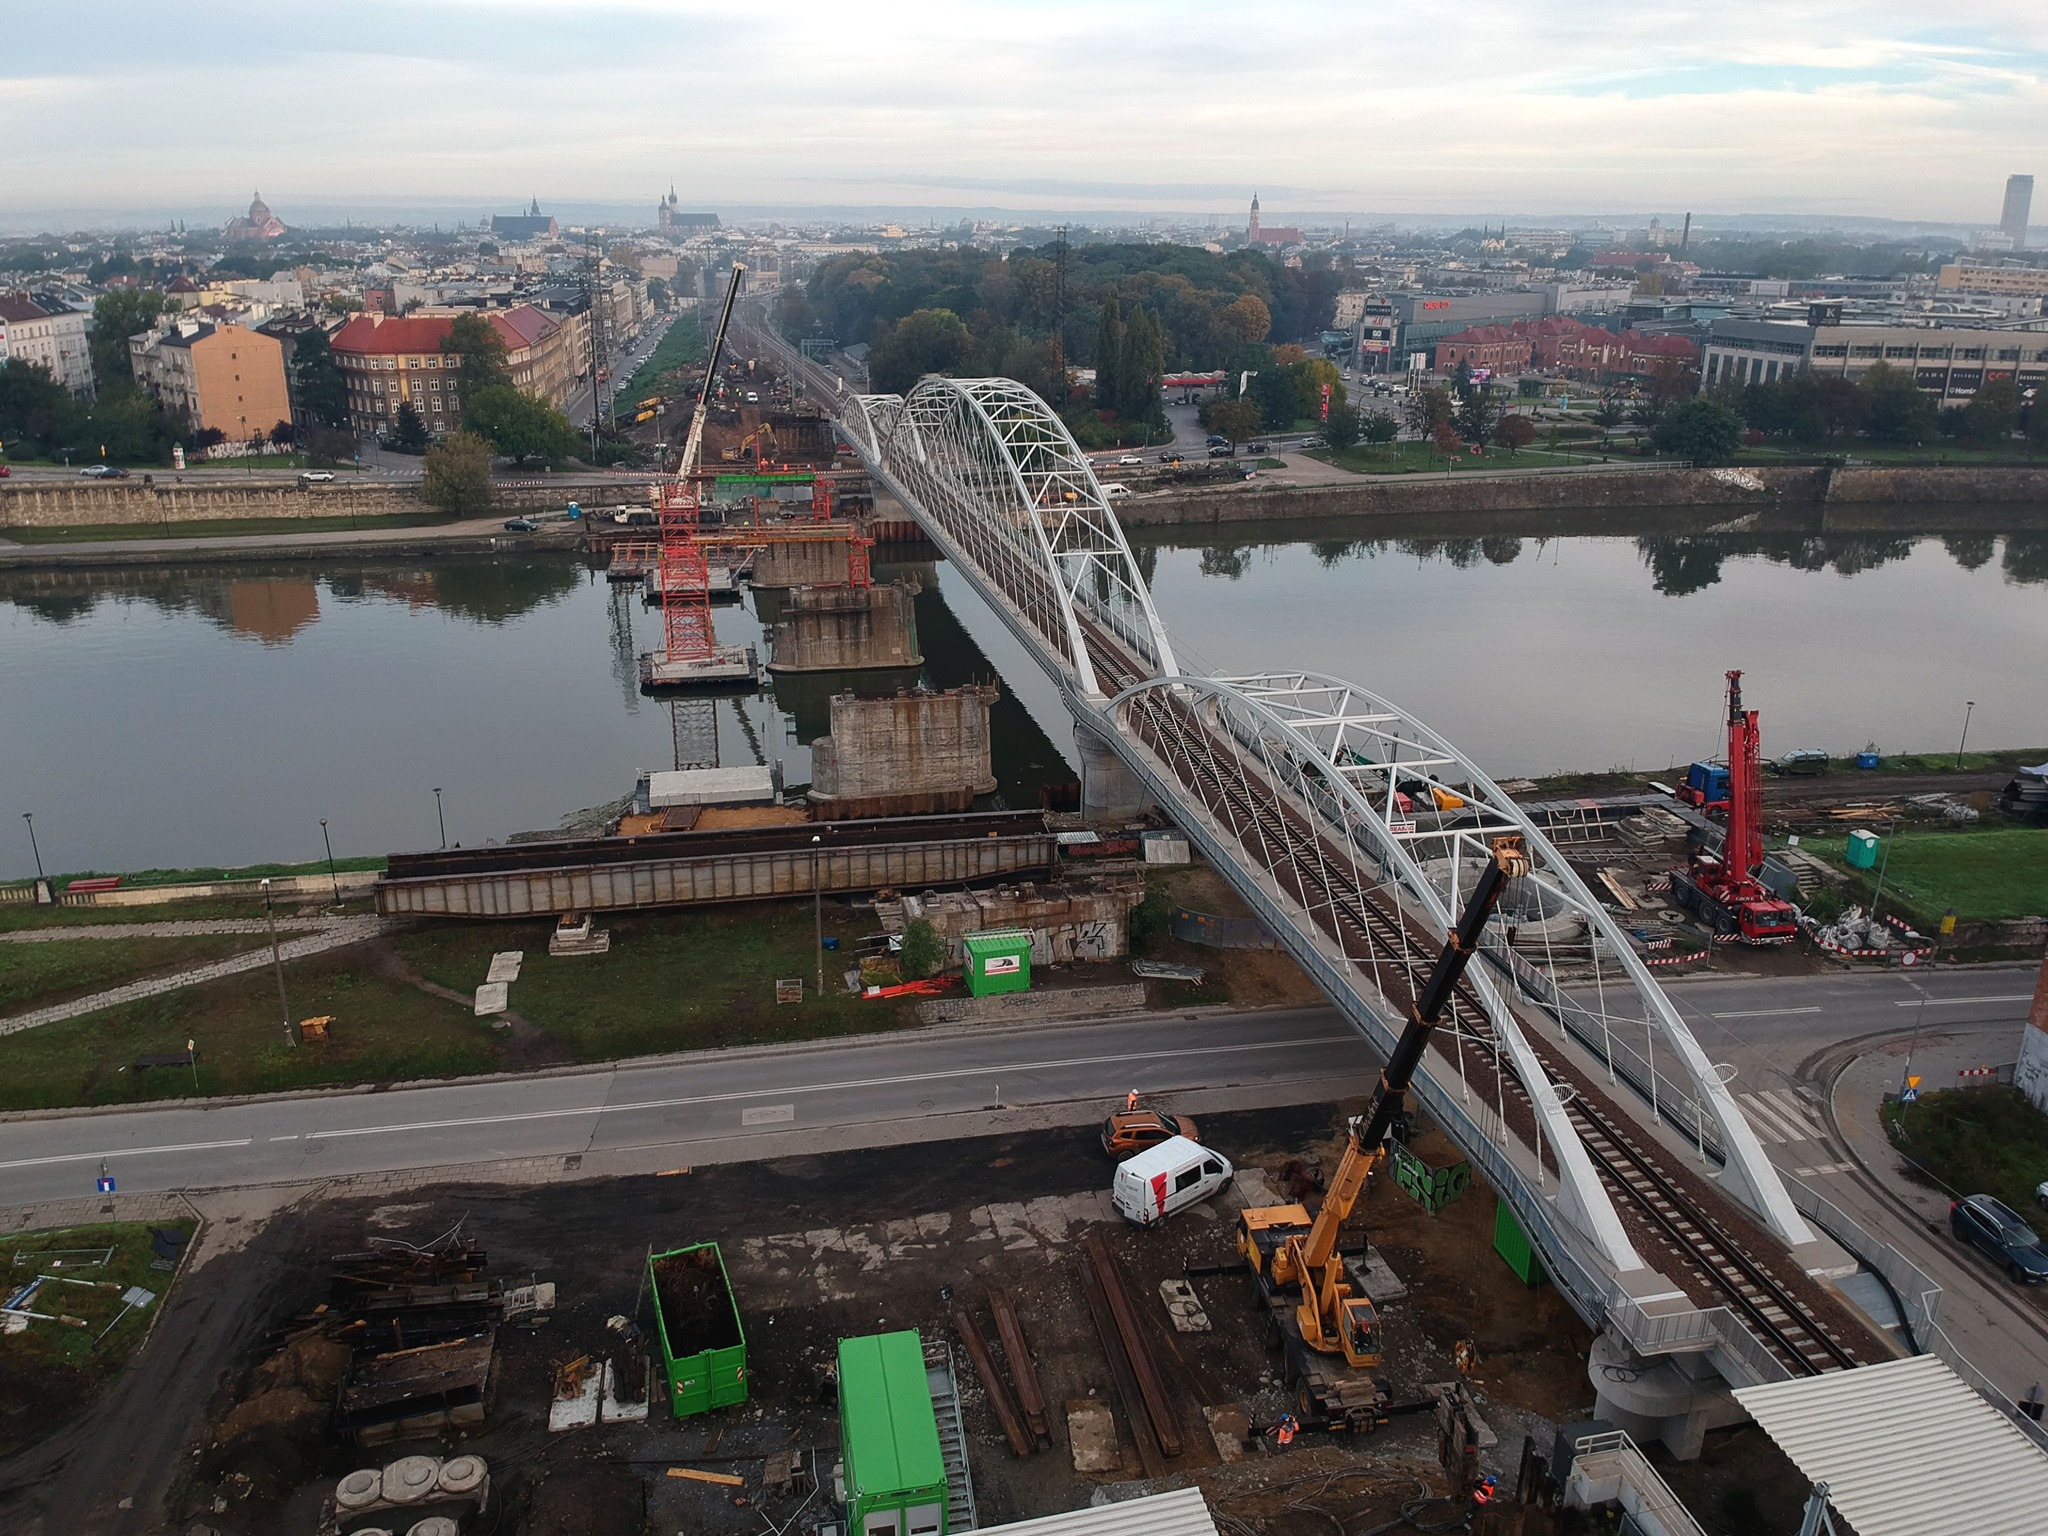 Zdjęcie z powietrza przedstawia nowy most kolejowy na Wiśle w Krakowie oraz podpory, pozostałe po demontażu starego mostu.